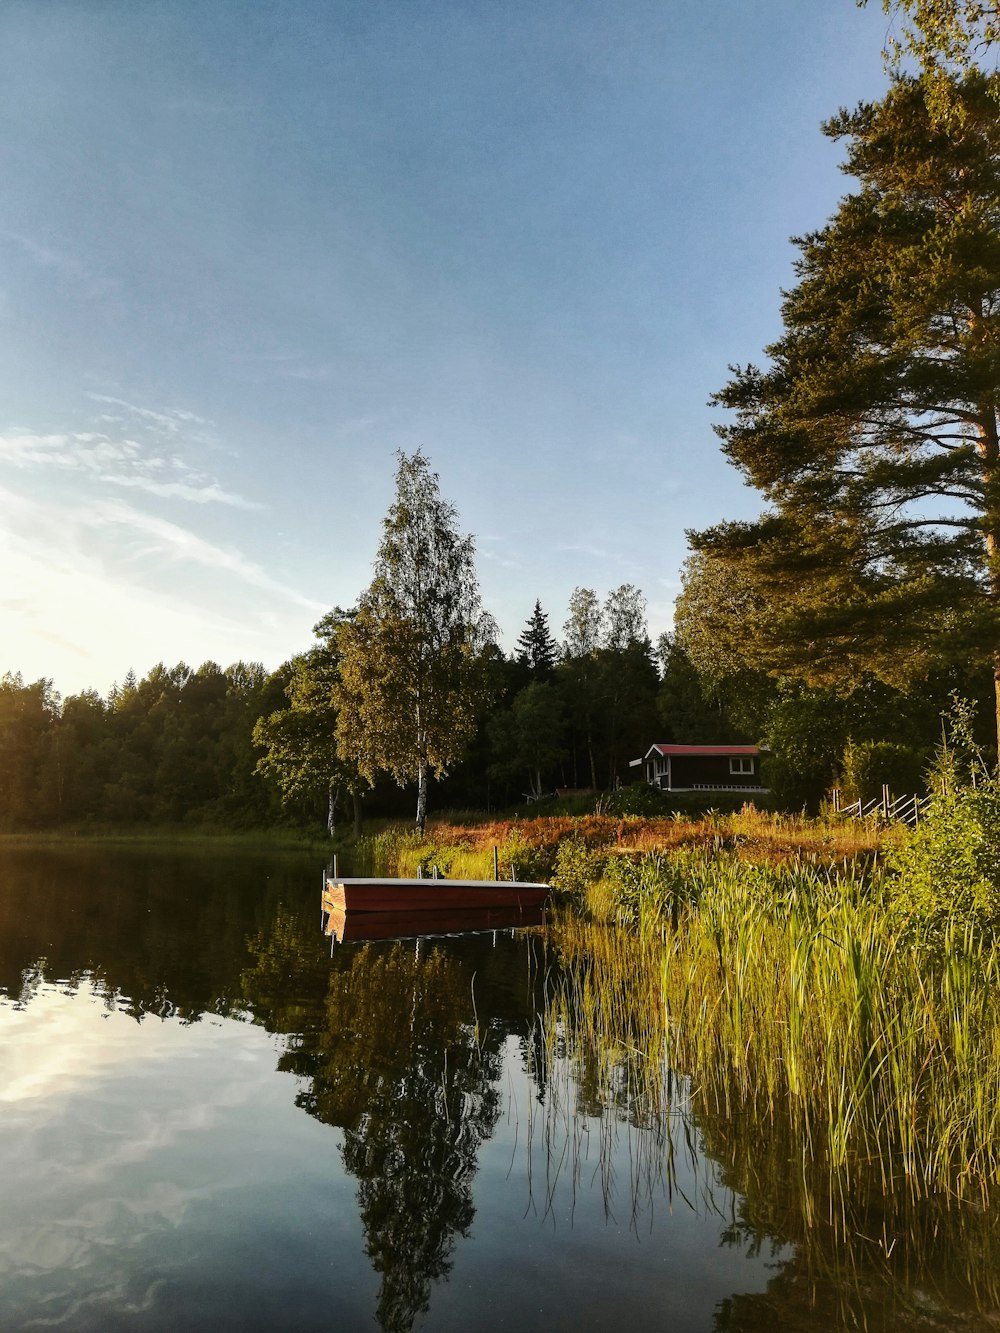 doca de madeira marrom no lago cercado por árvores verdes sob o céu azul durante o dia